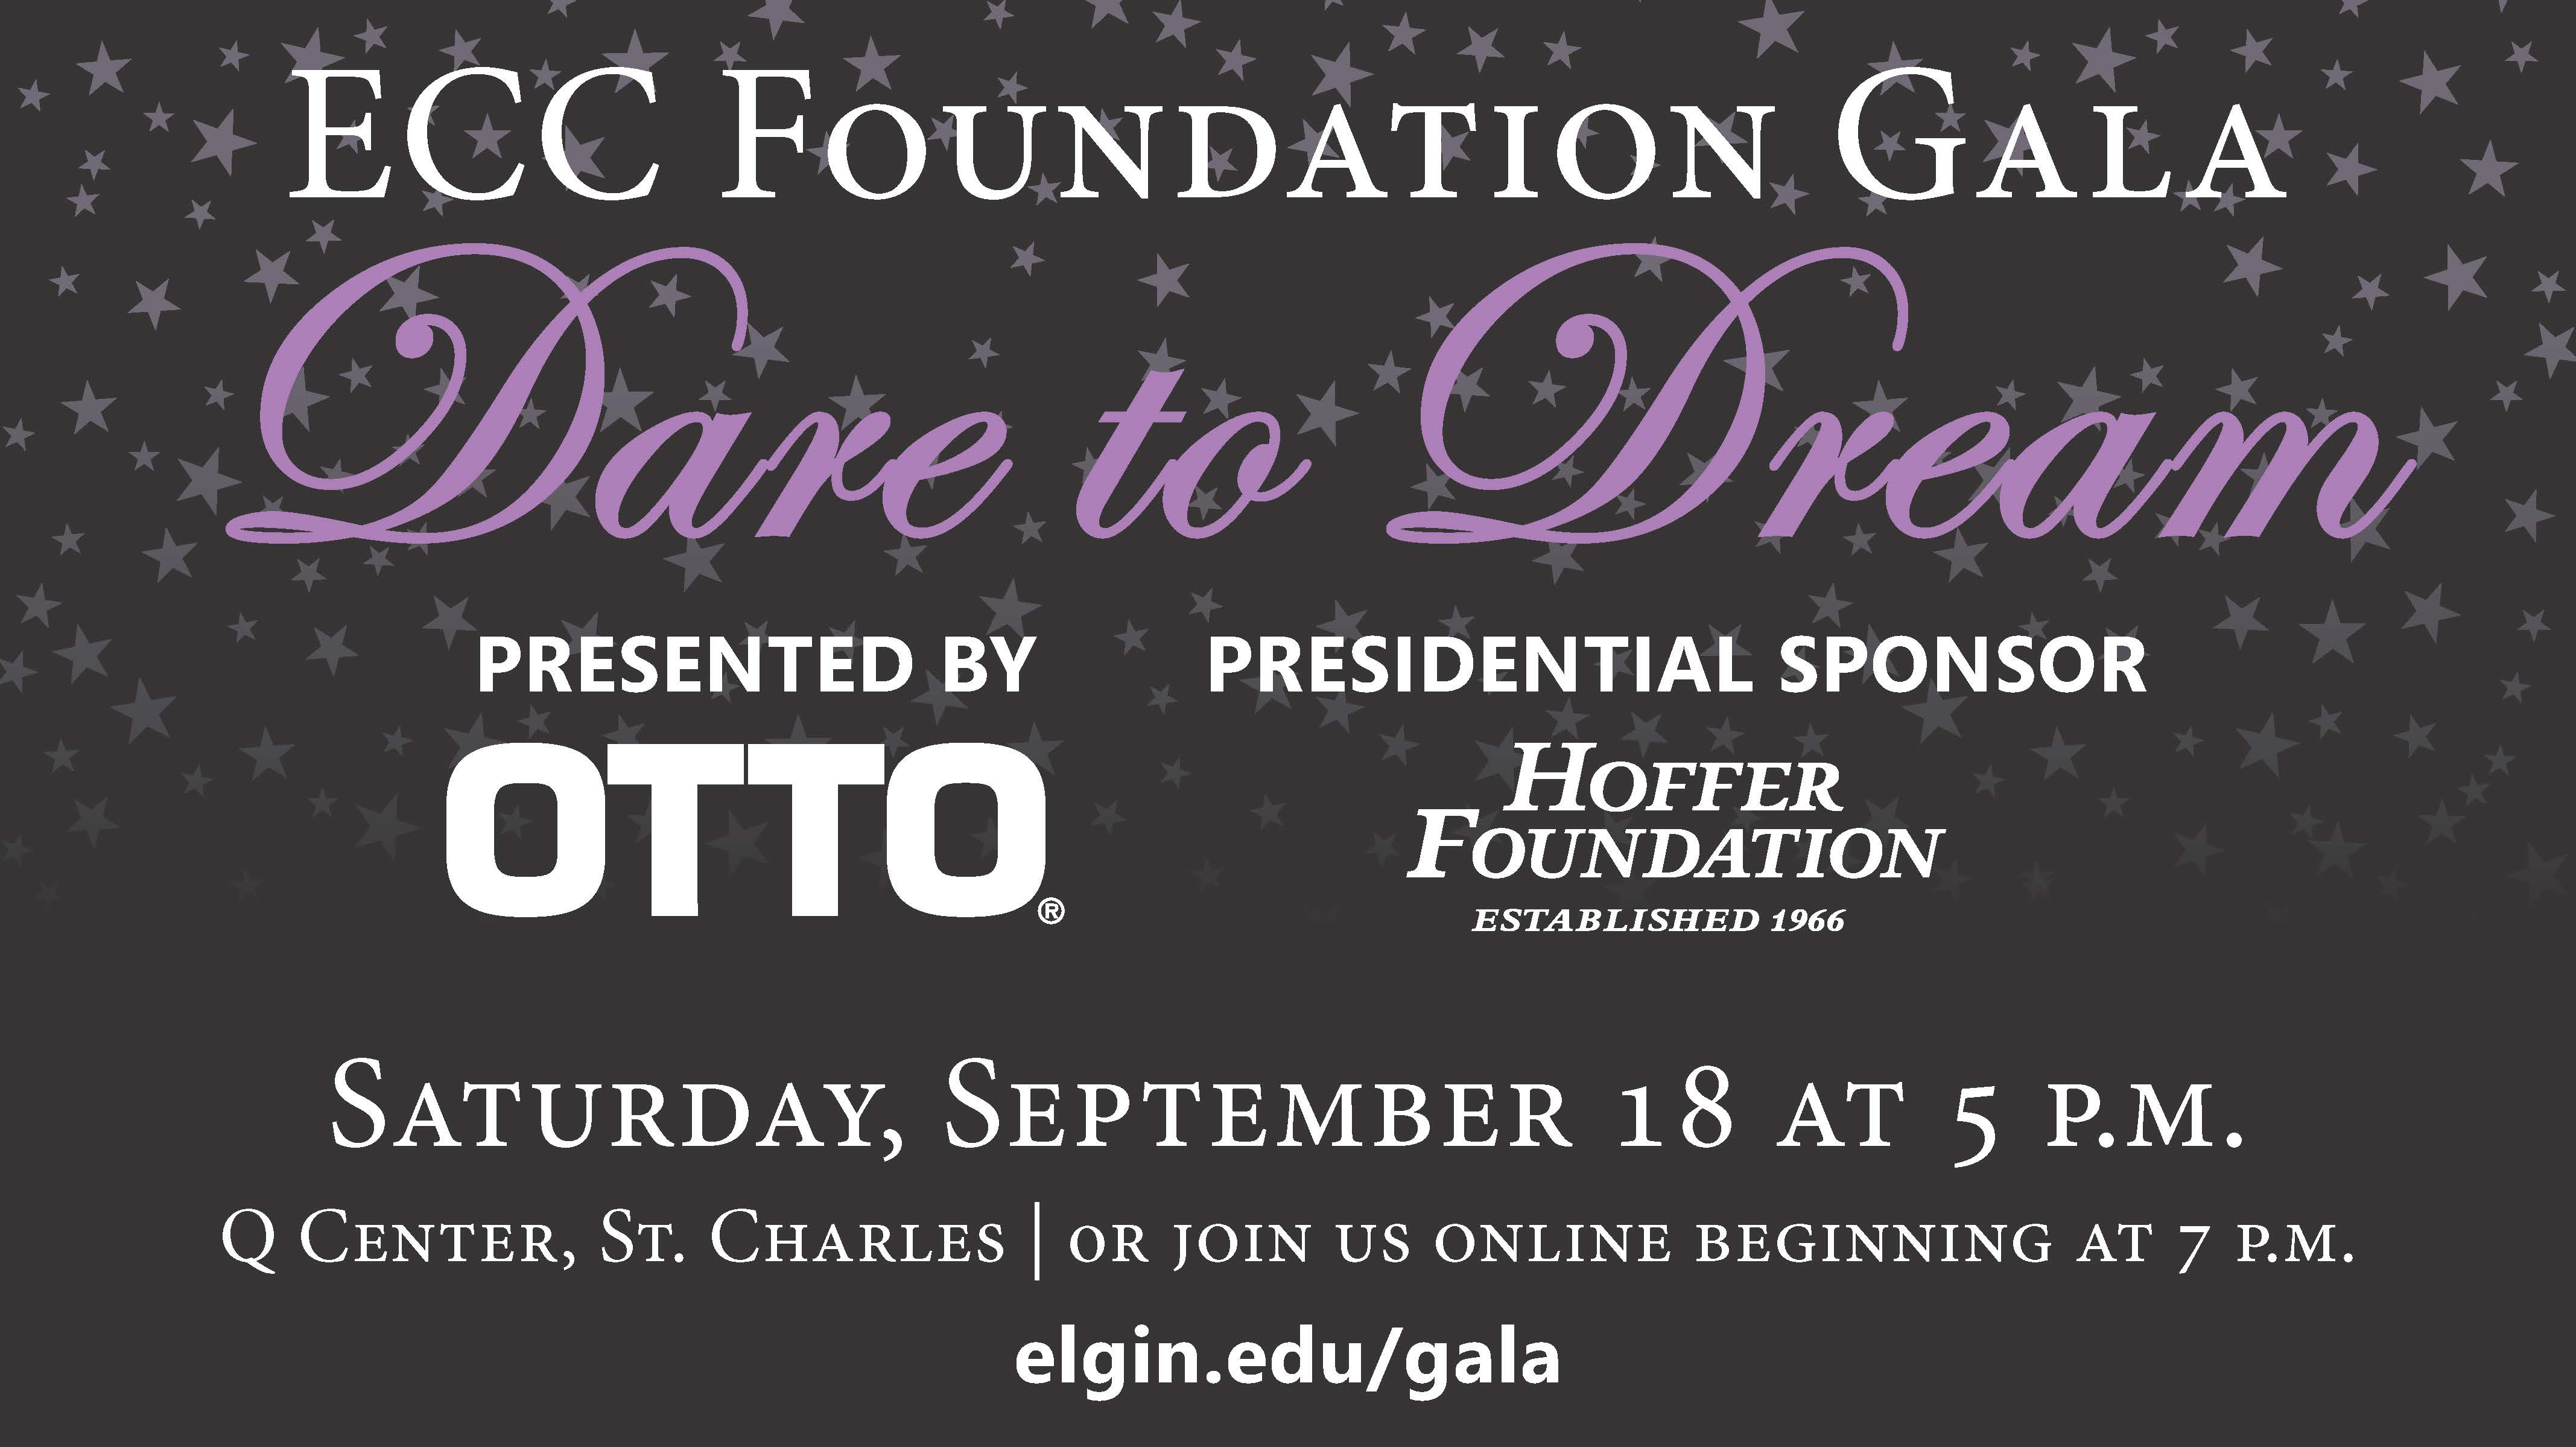 The ECC Foundation Gala: Dare to Dream is Saturday, Sept. 18.